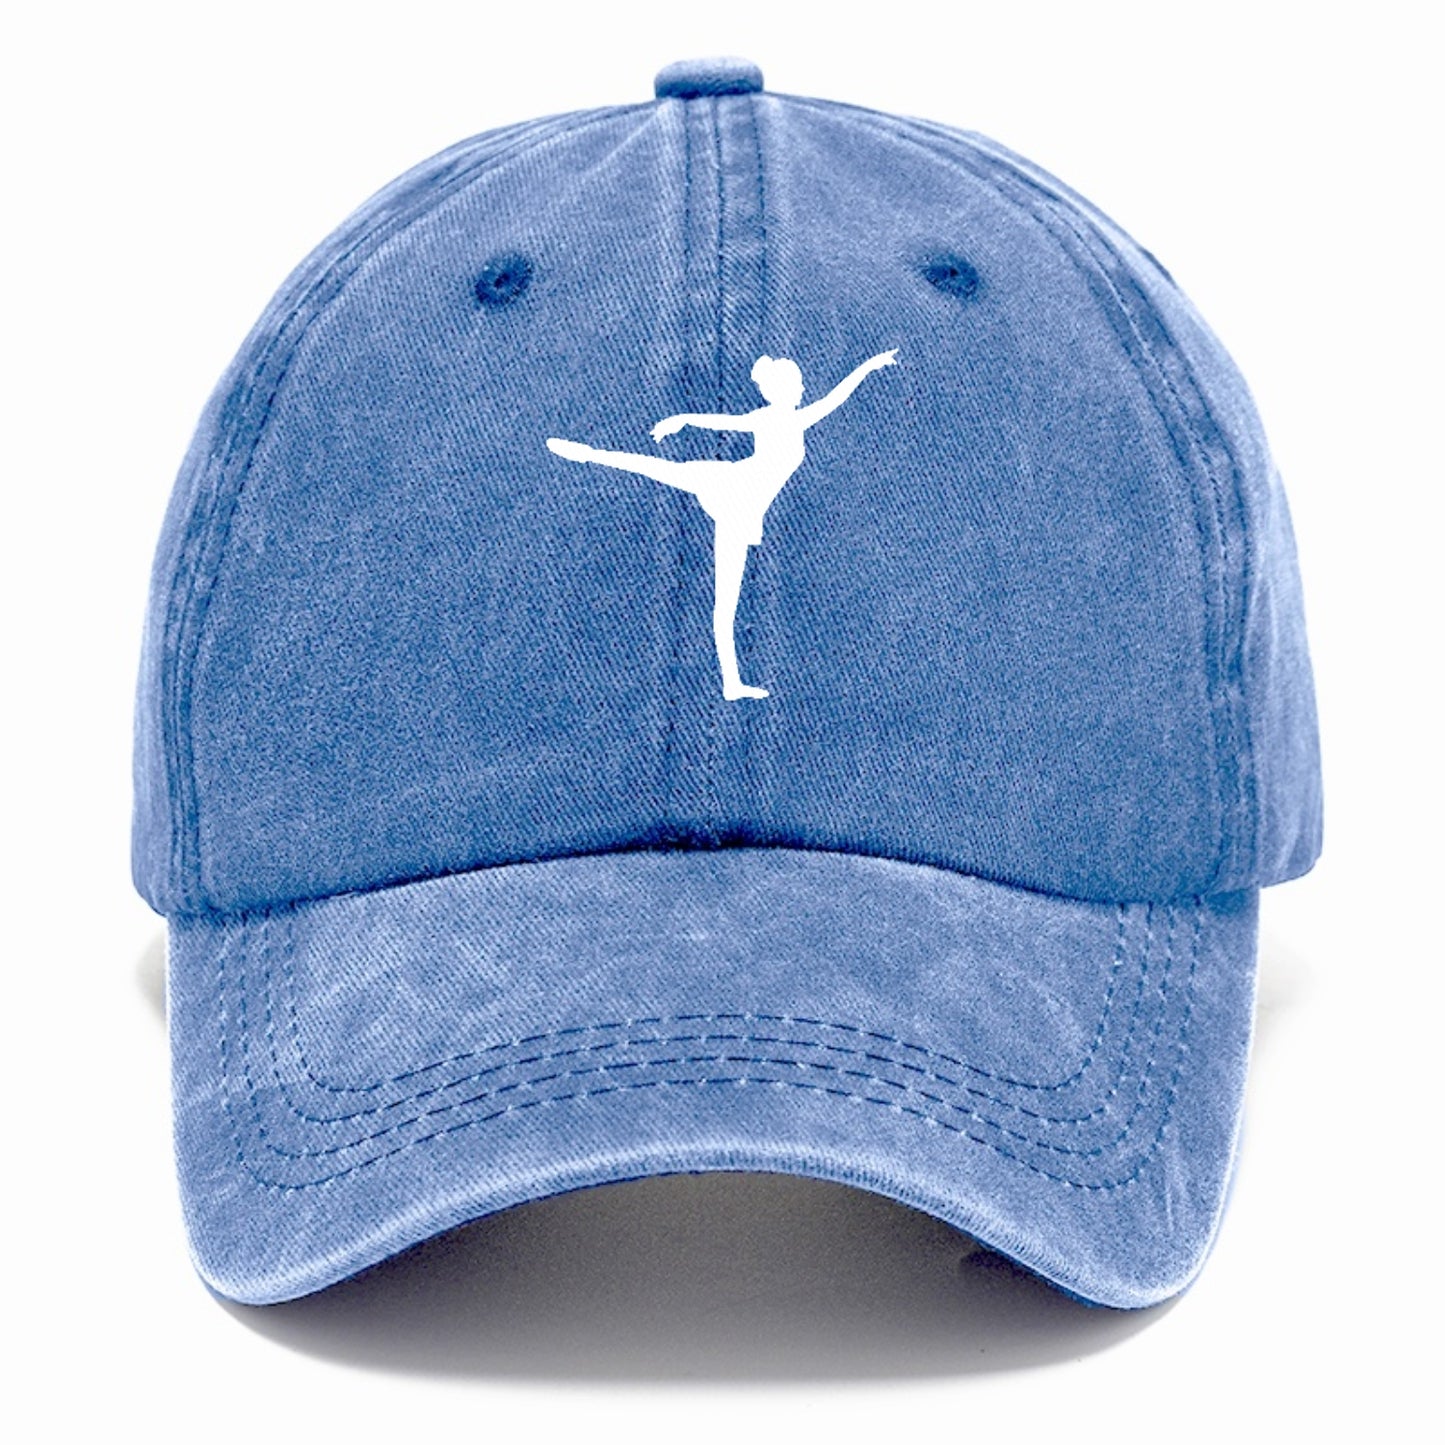 ballet 3 Hat